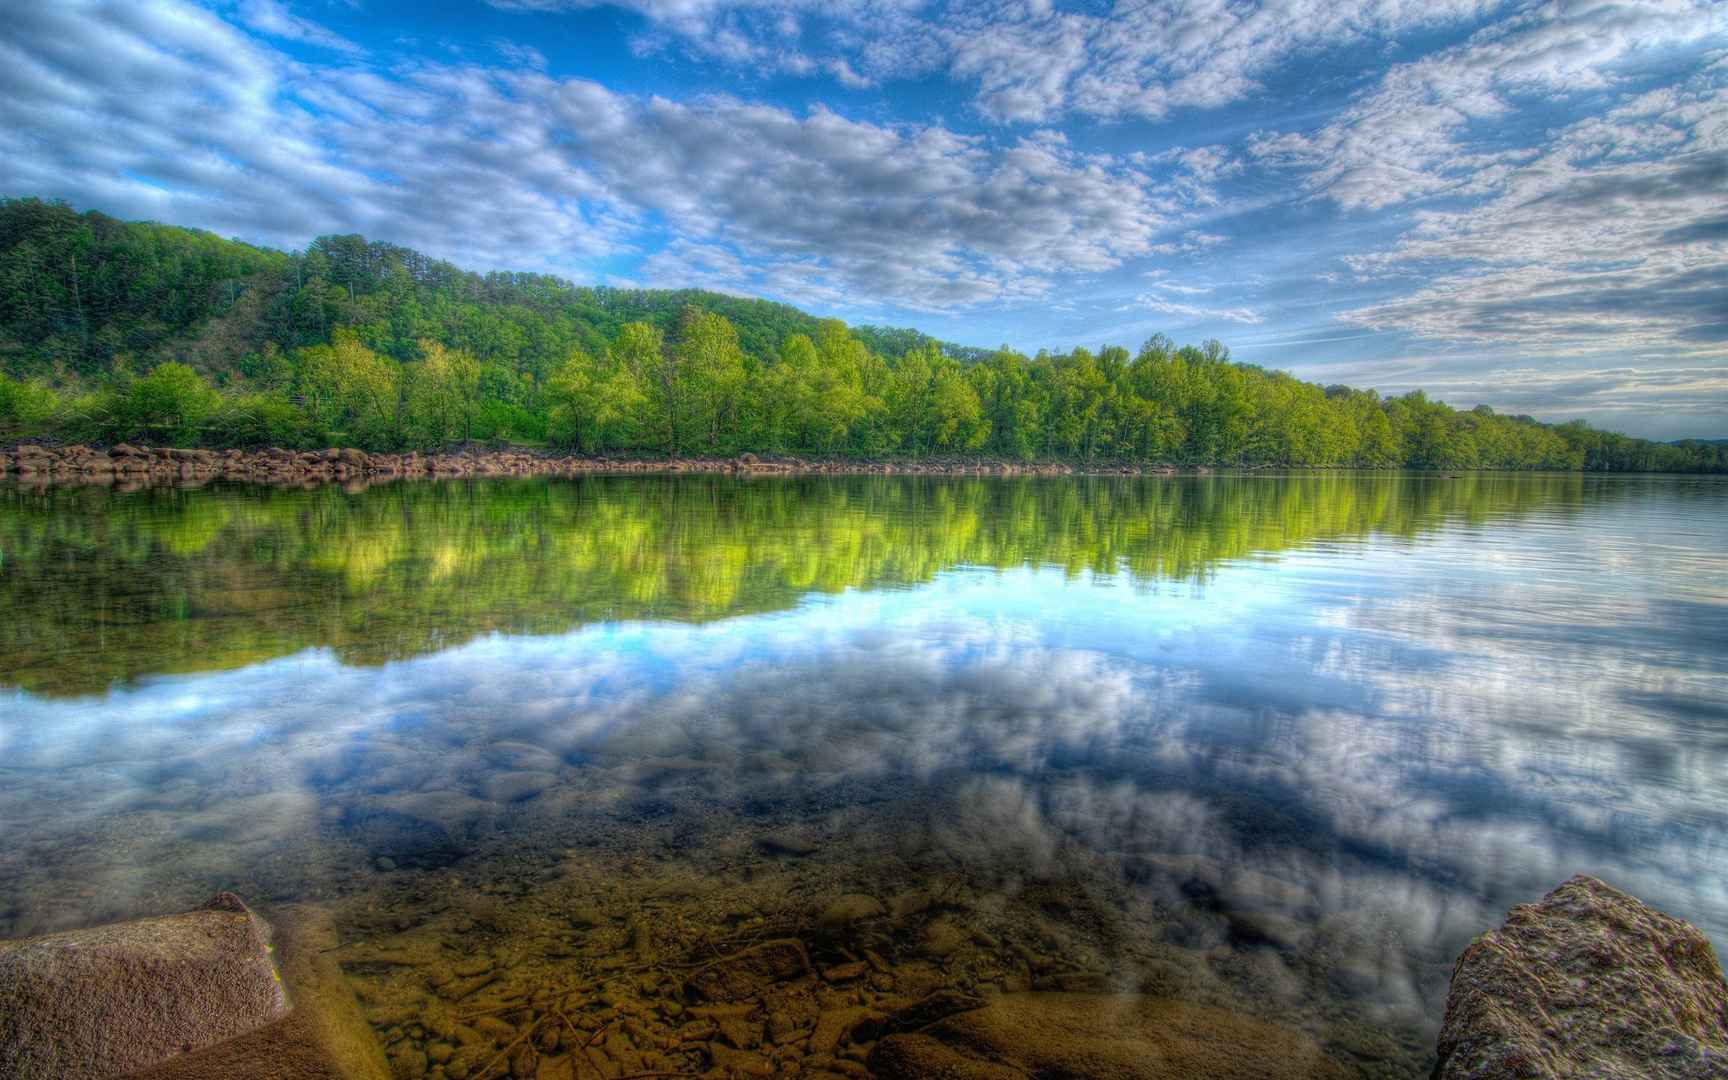 原始森林里如镜面一般的湖泊美景壁纸图片-